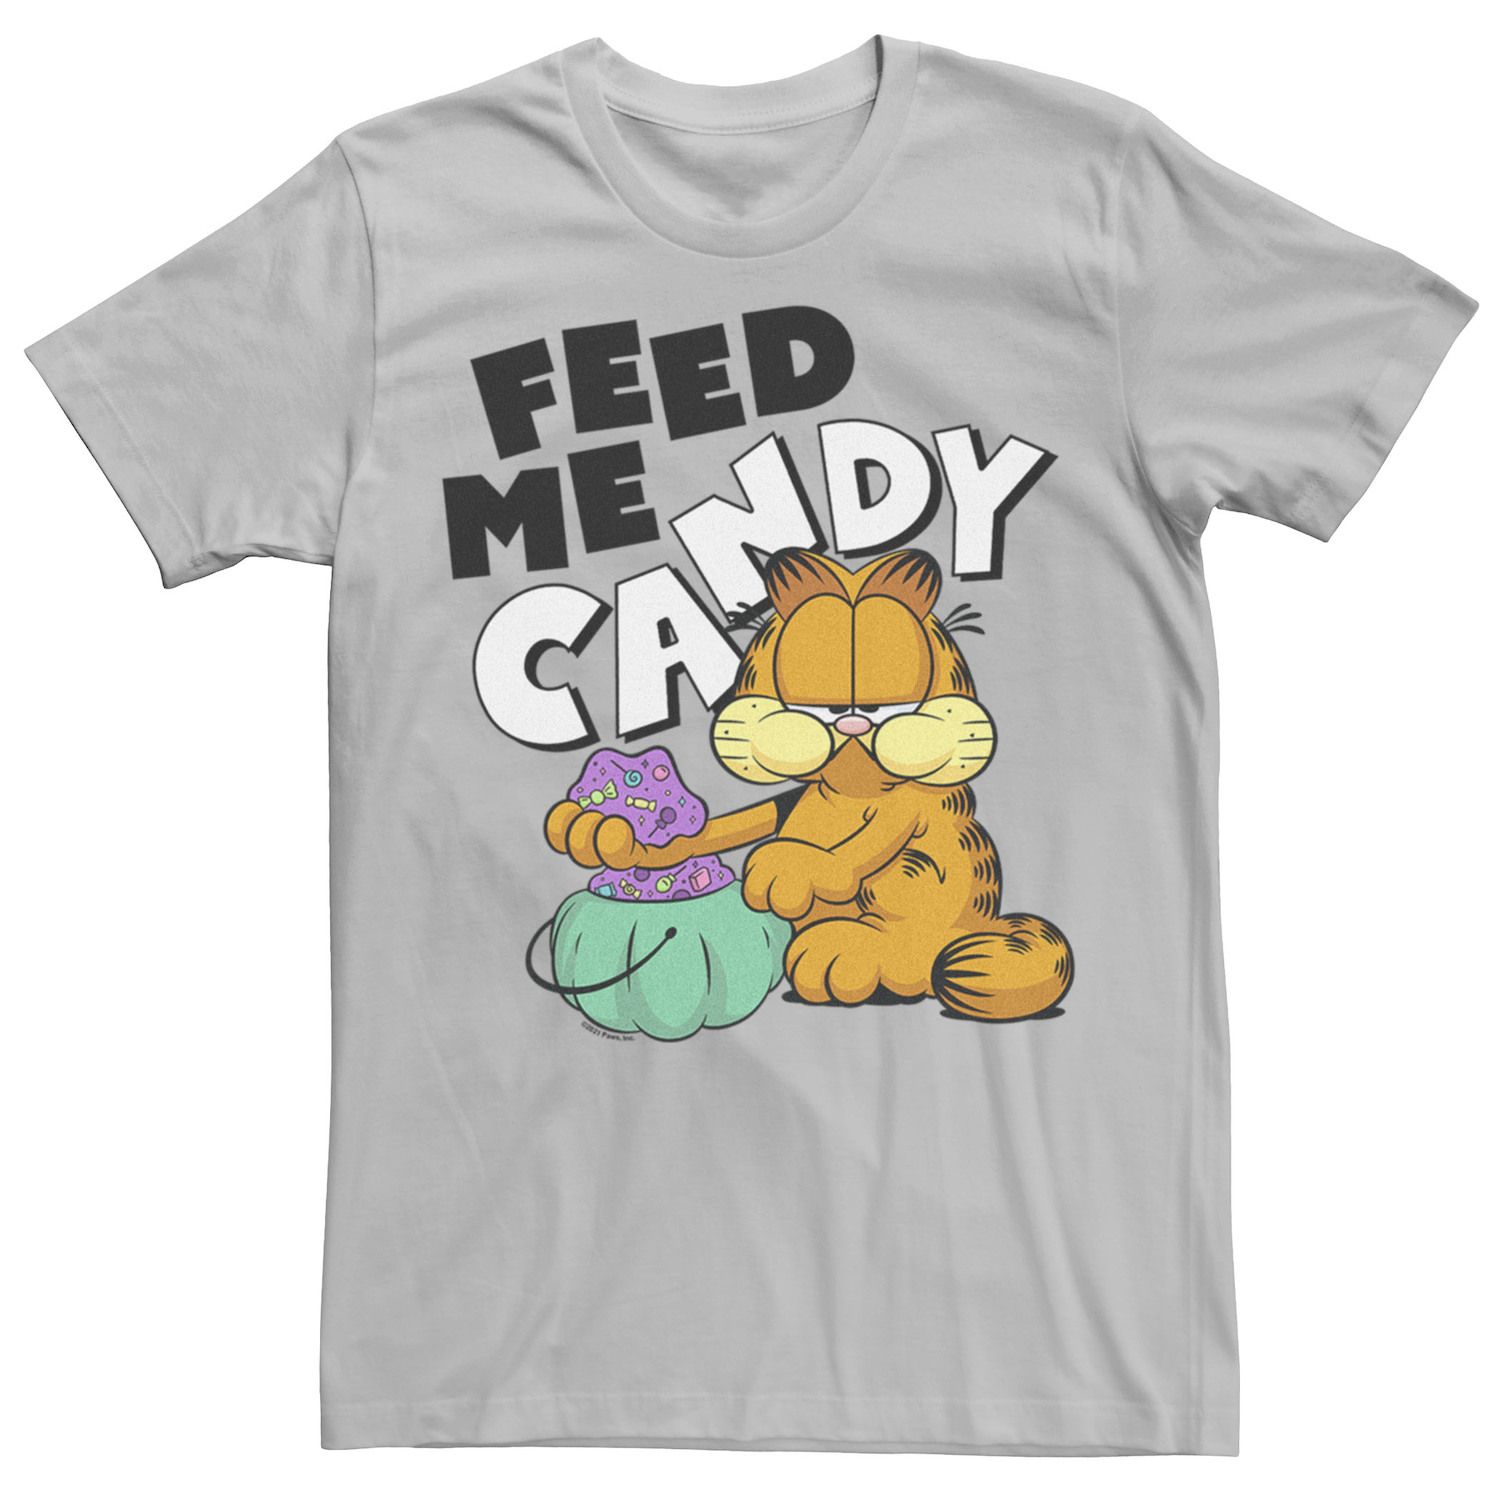 Мужская футболка с рисунком Garfield Feed Me Candy Licensed Character